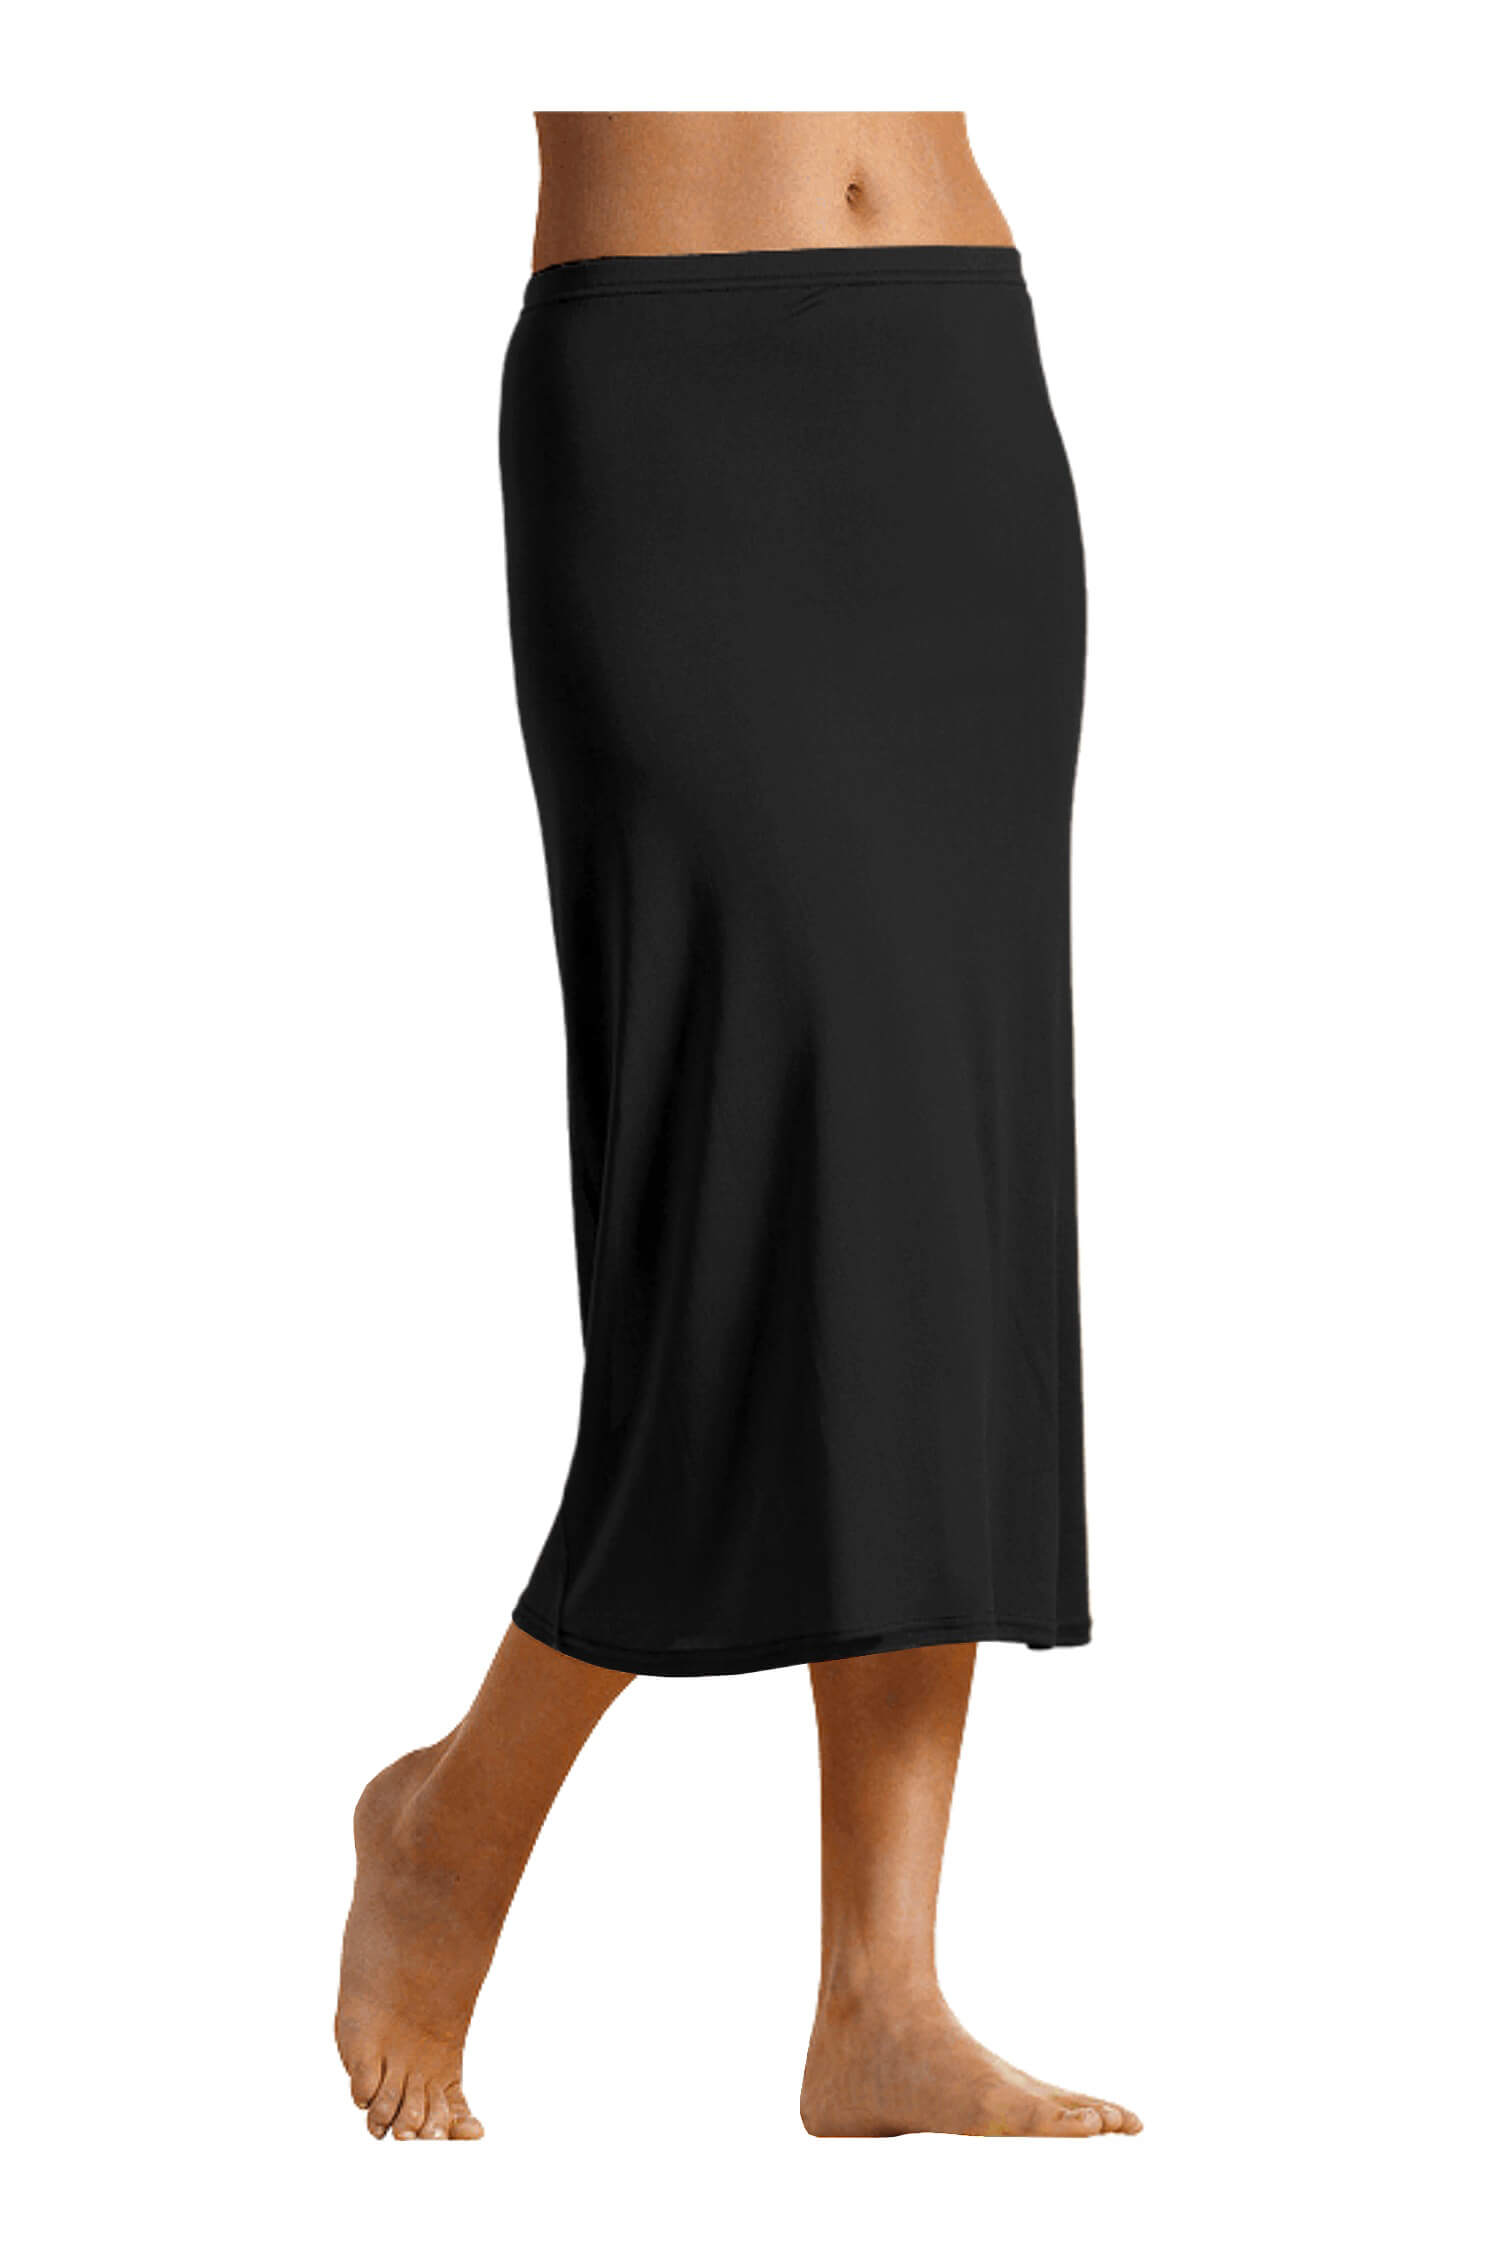 Jovanka bavlněná spodnička - sukně 716 M černá